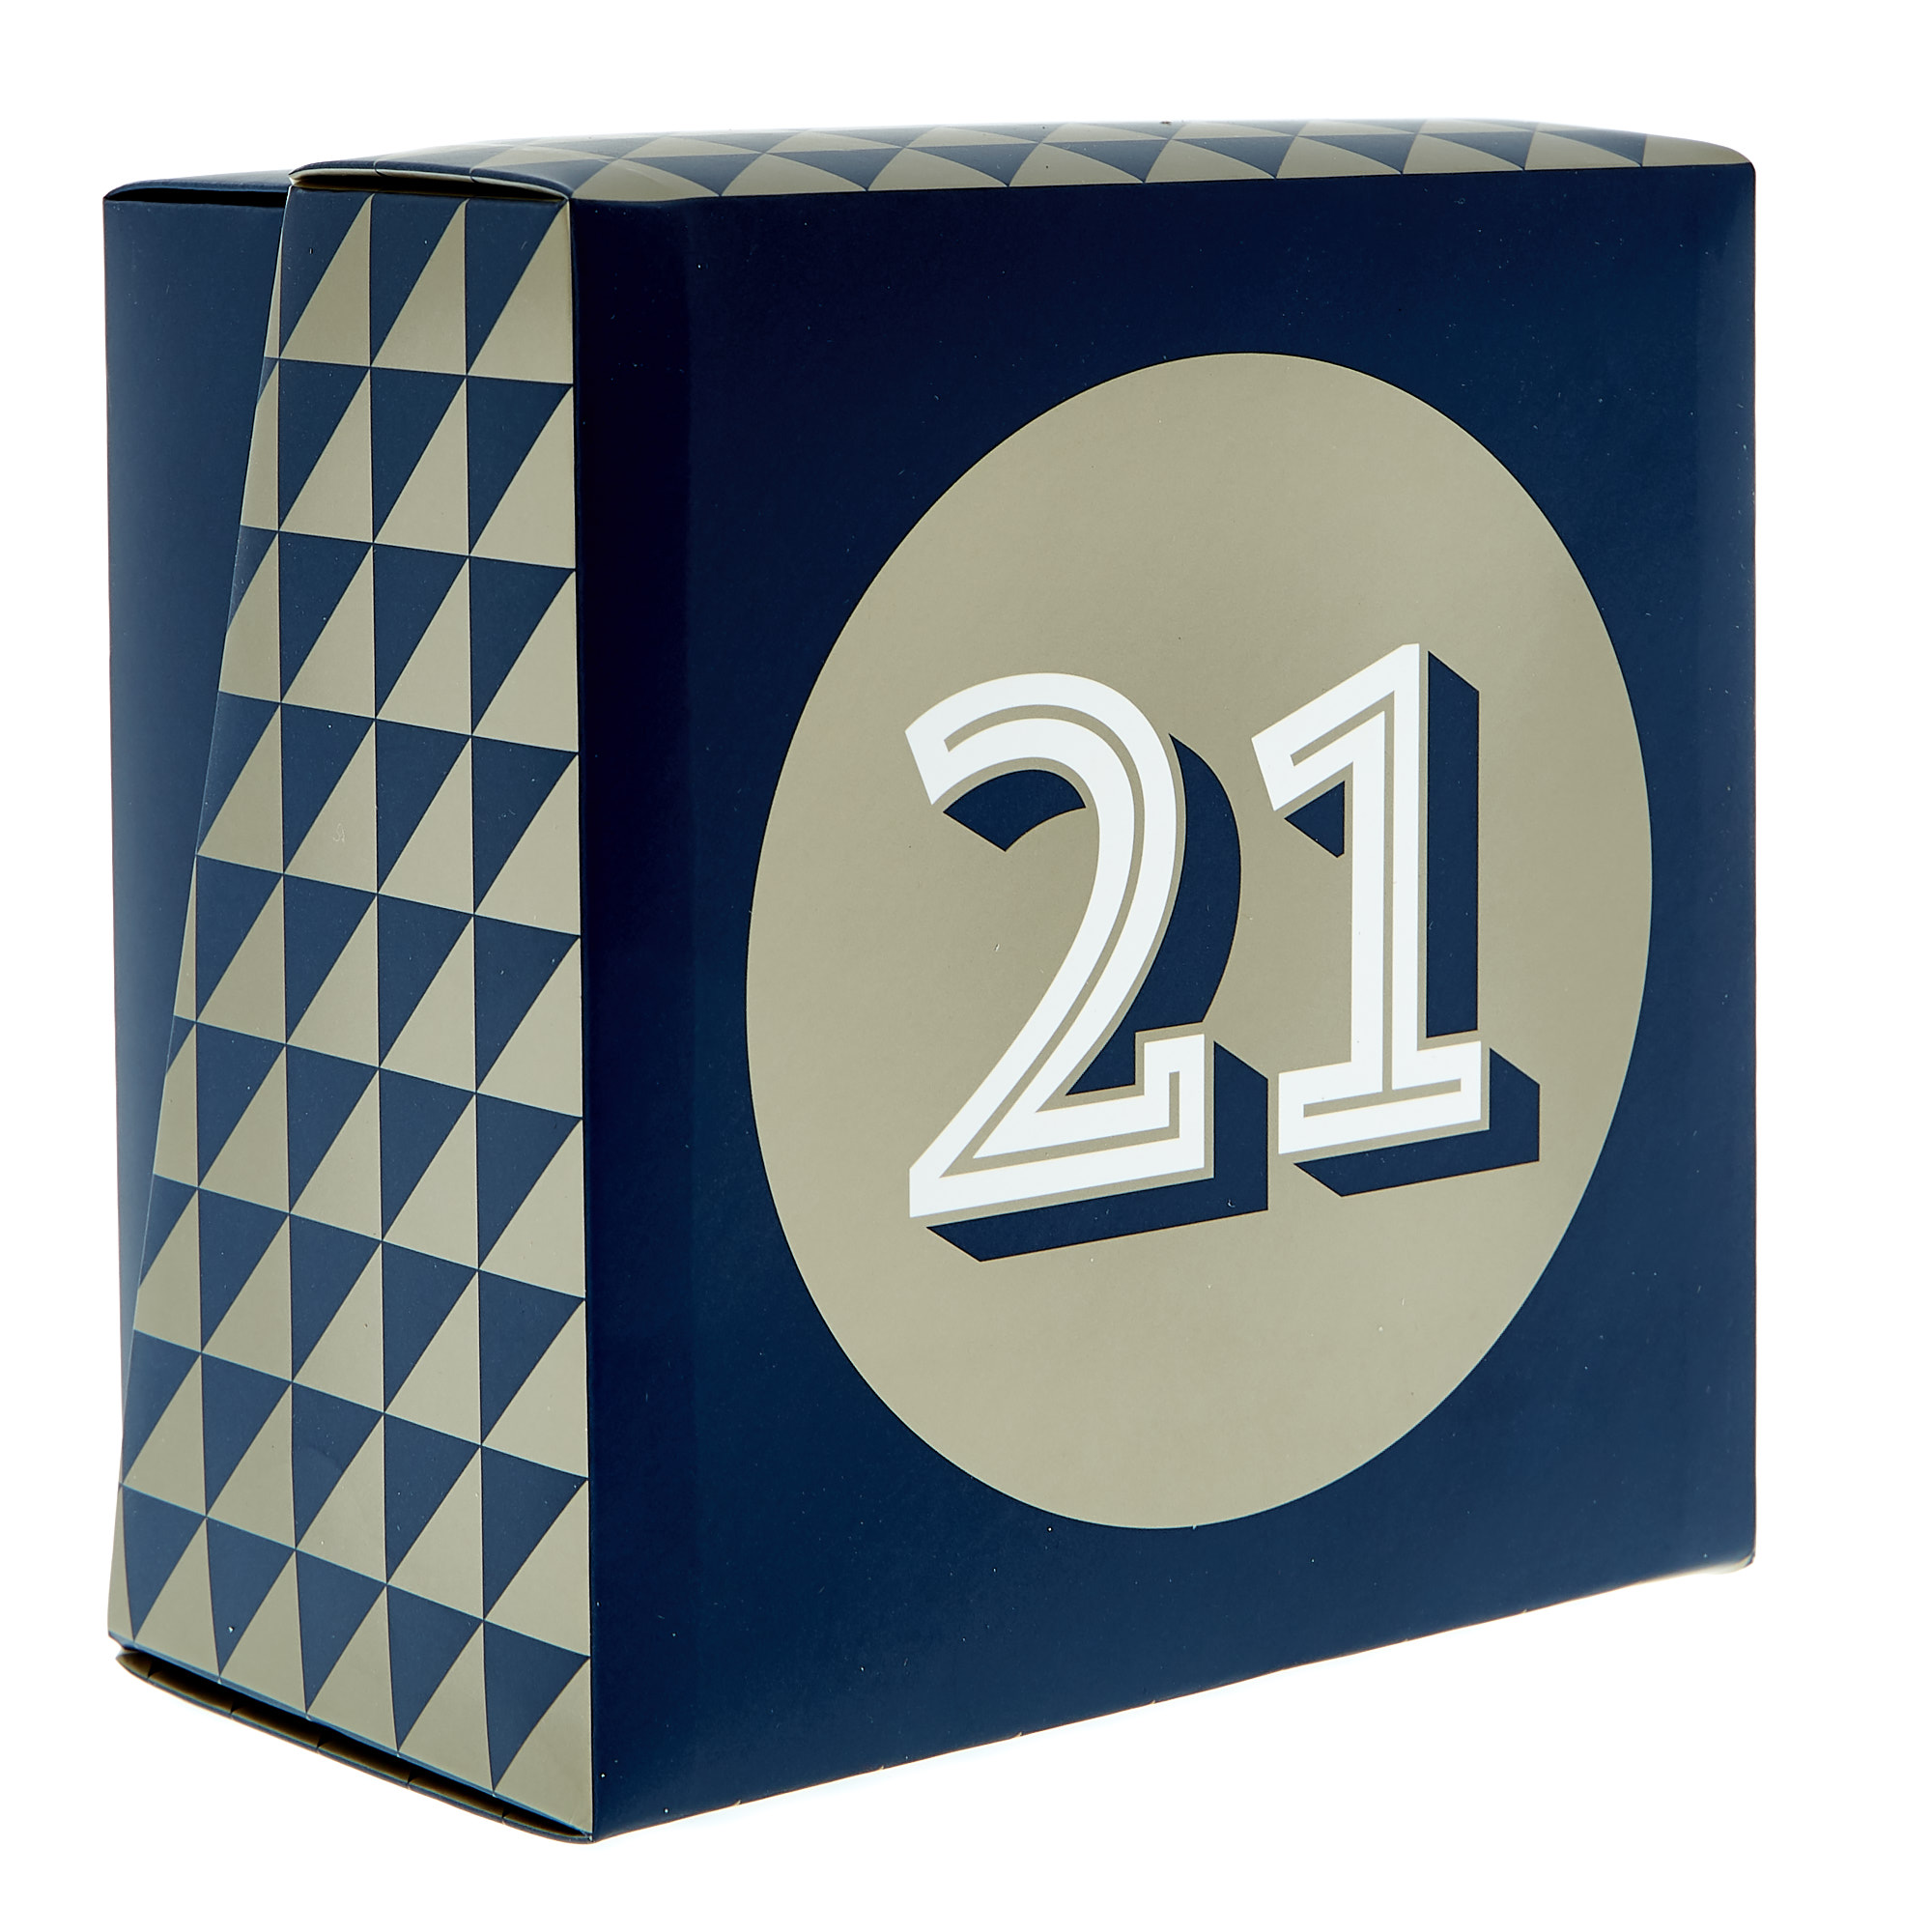 21st Birthday Mug In A Box - Blue & Gold 